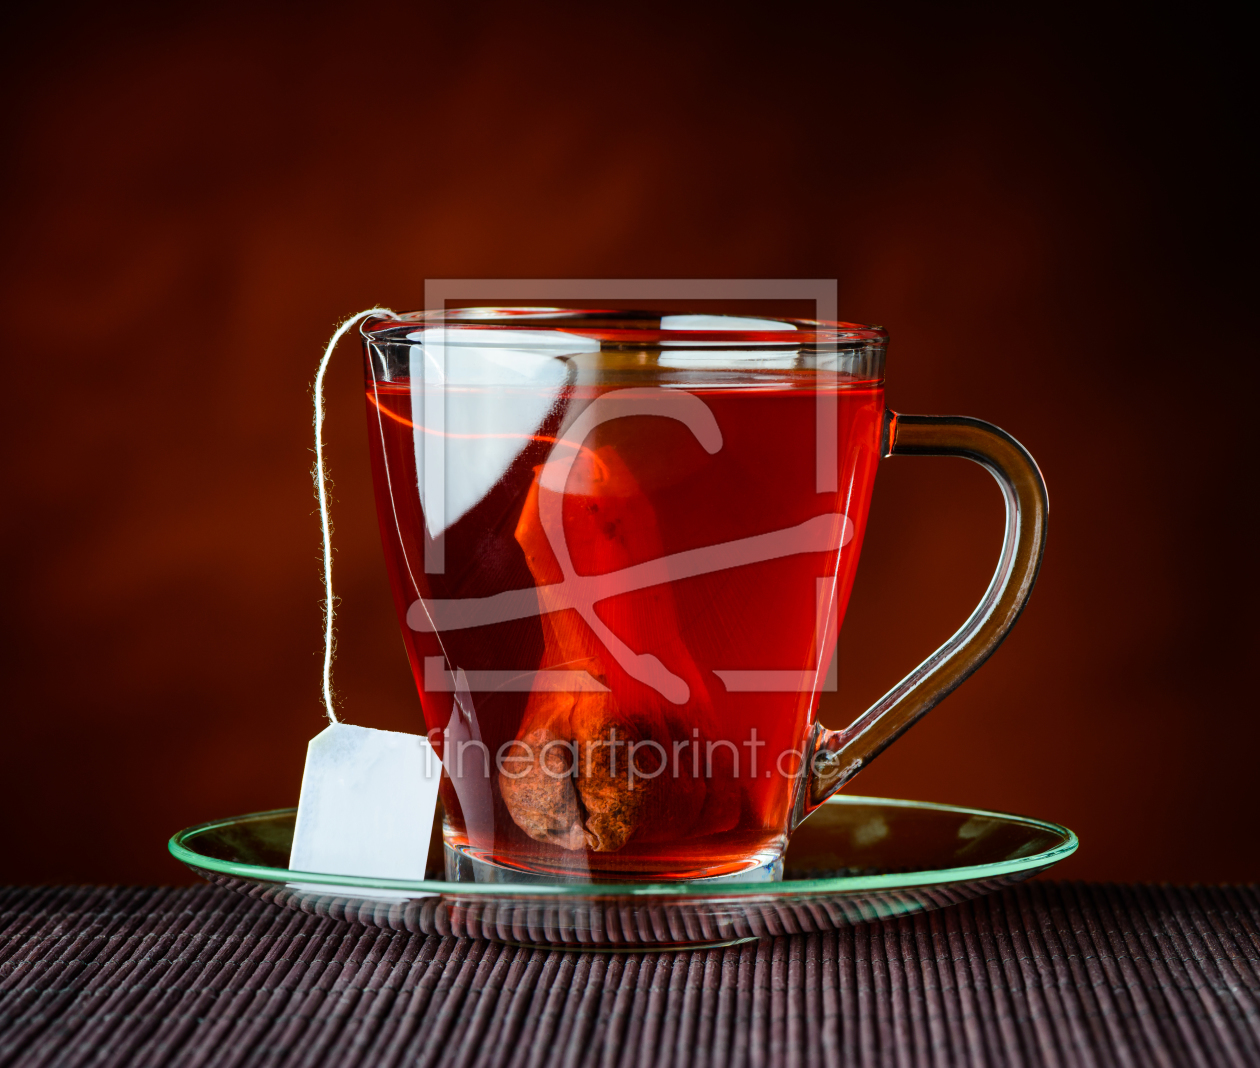 Bild-Nr.: 11914457 Roter Früchtetee mit Teebeutel erstellt von xfotostudio